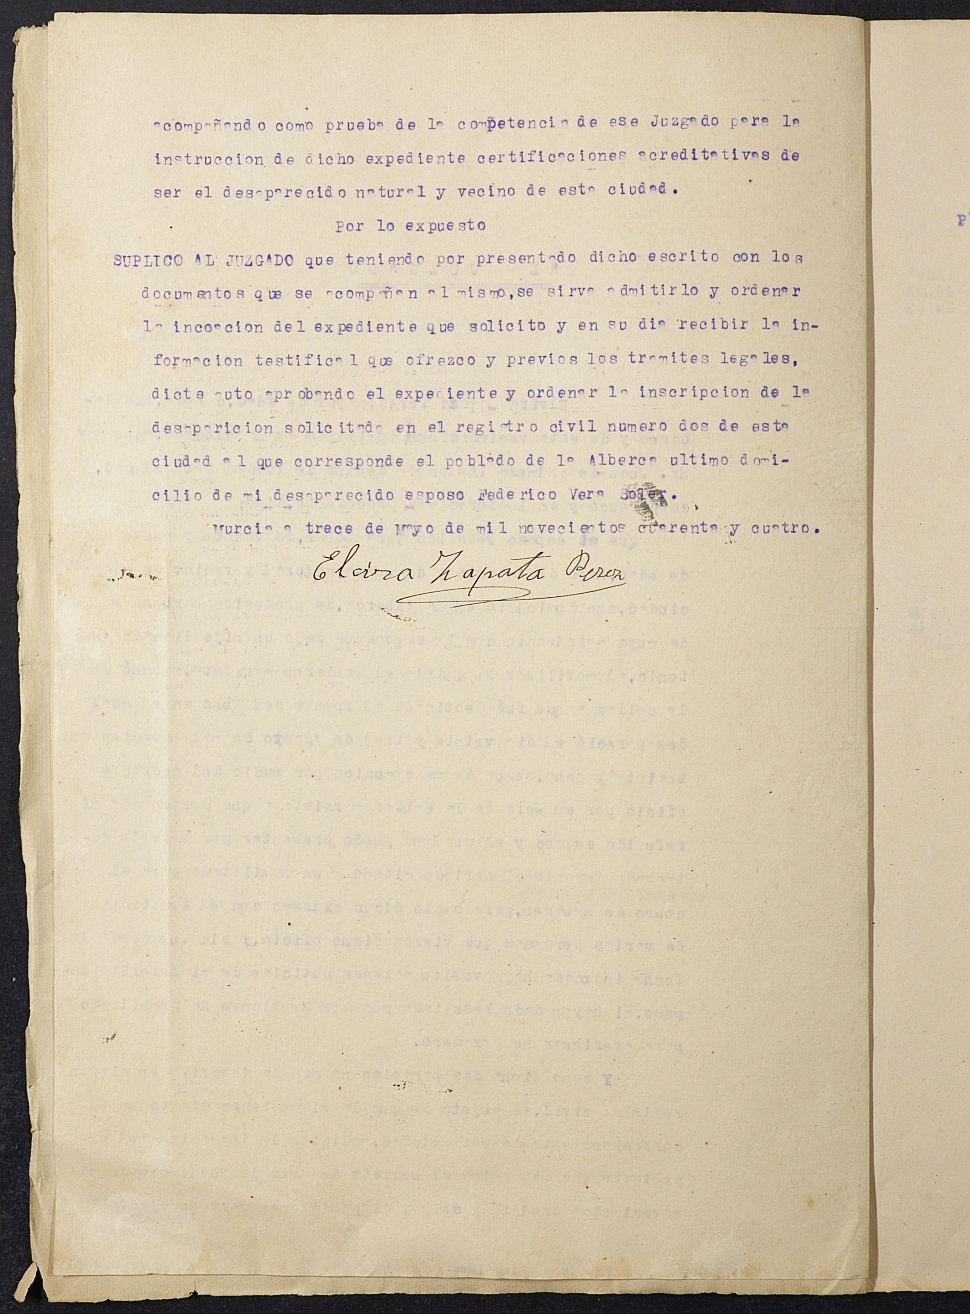 Expediente nº 441/1944 del Juzgado de Primera Instancia de Murcia para la inscripción en el Registro Civil por la desaparición de Federico Vera Sler